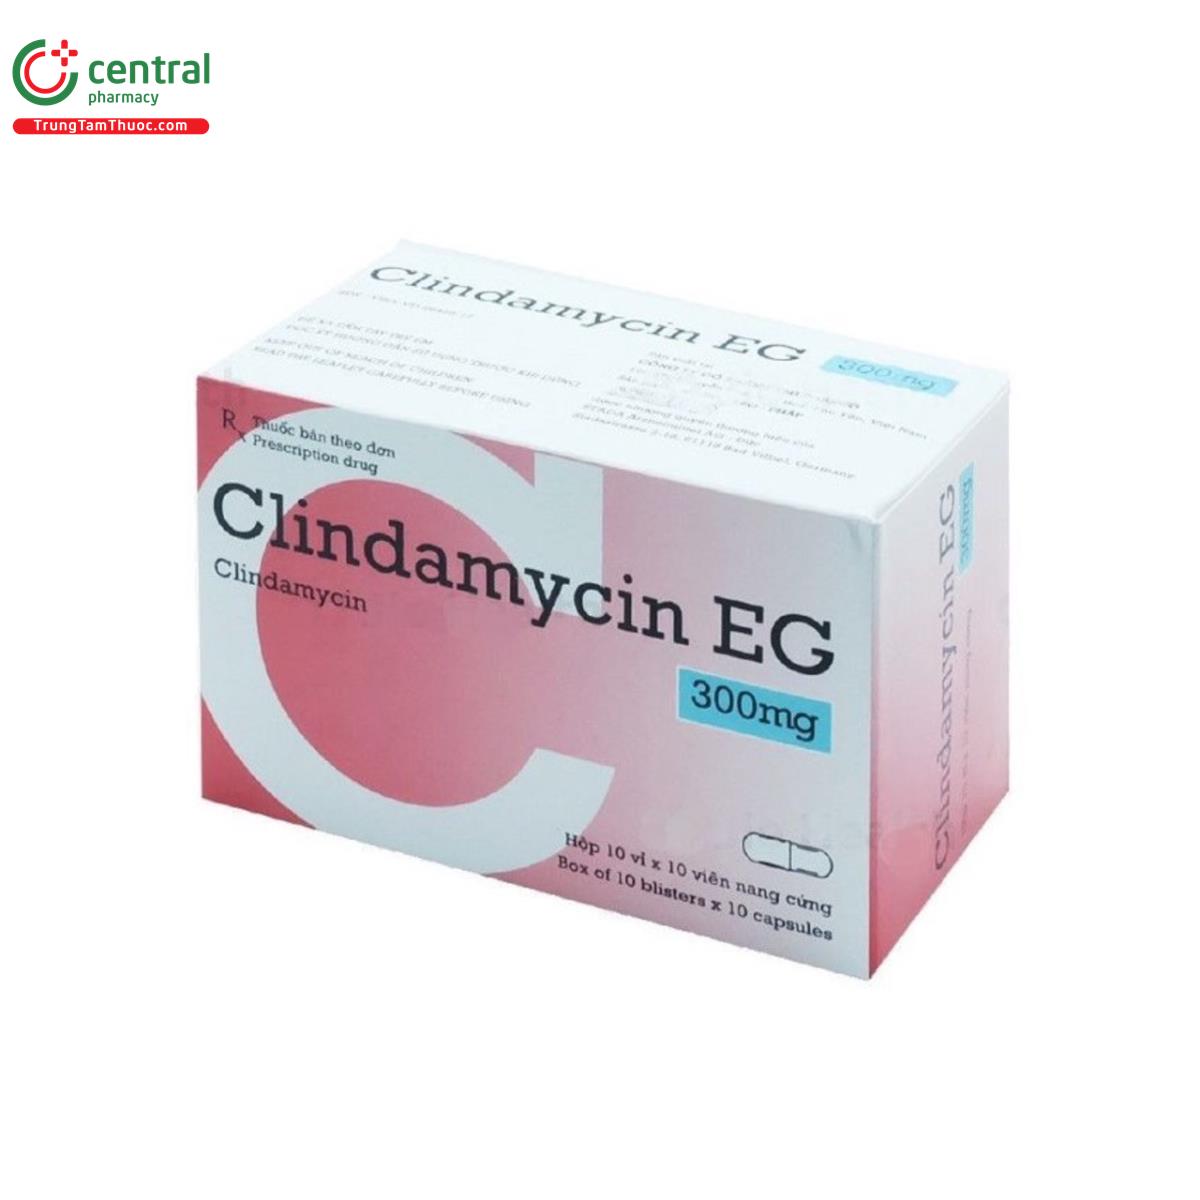 clindamycin eg 300mg 4 Q6010